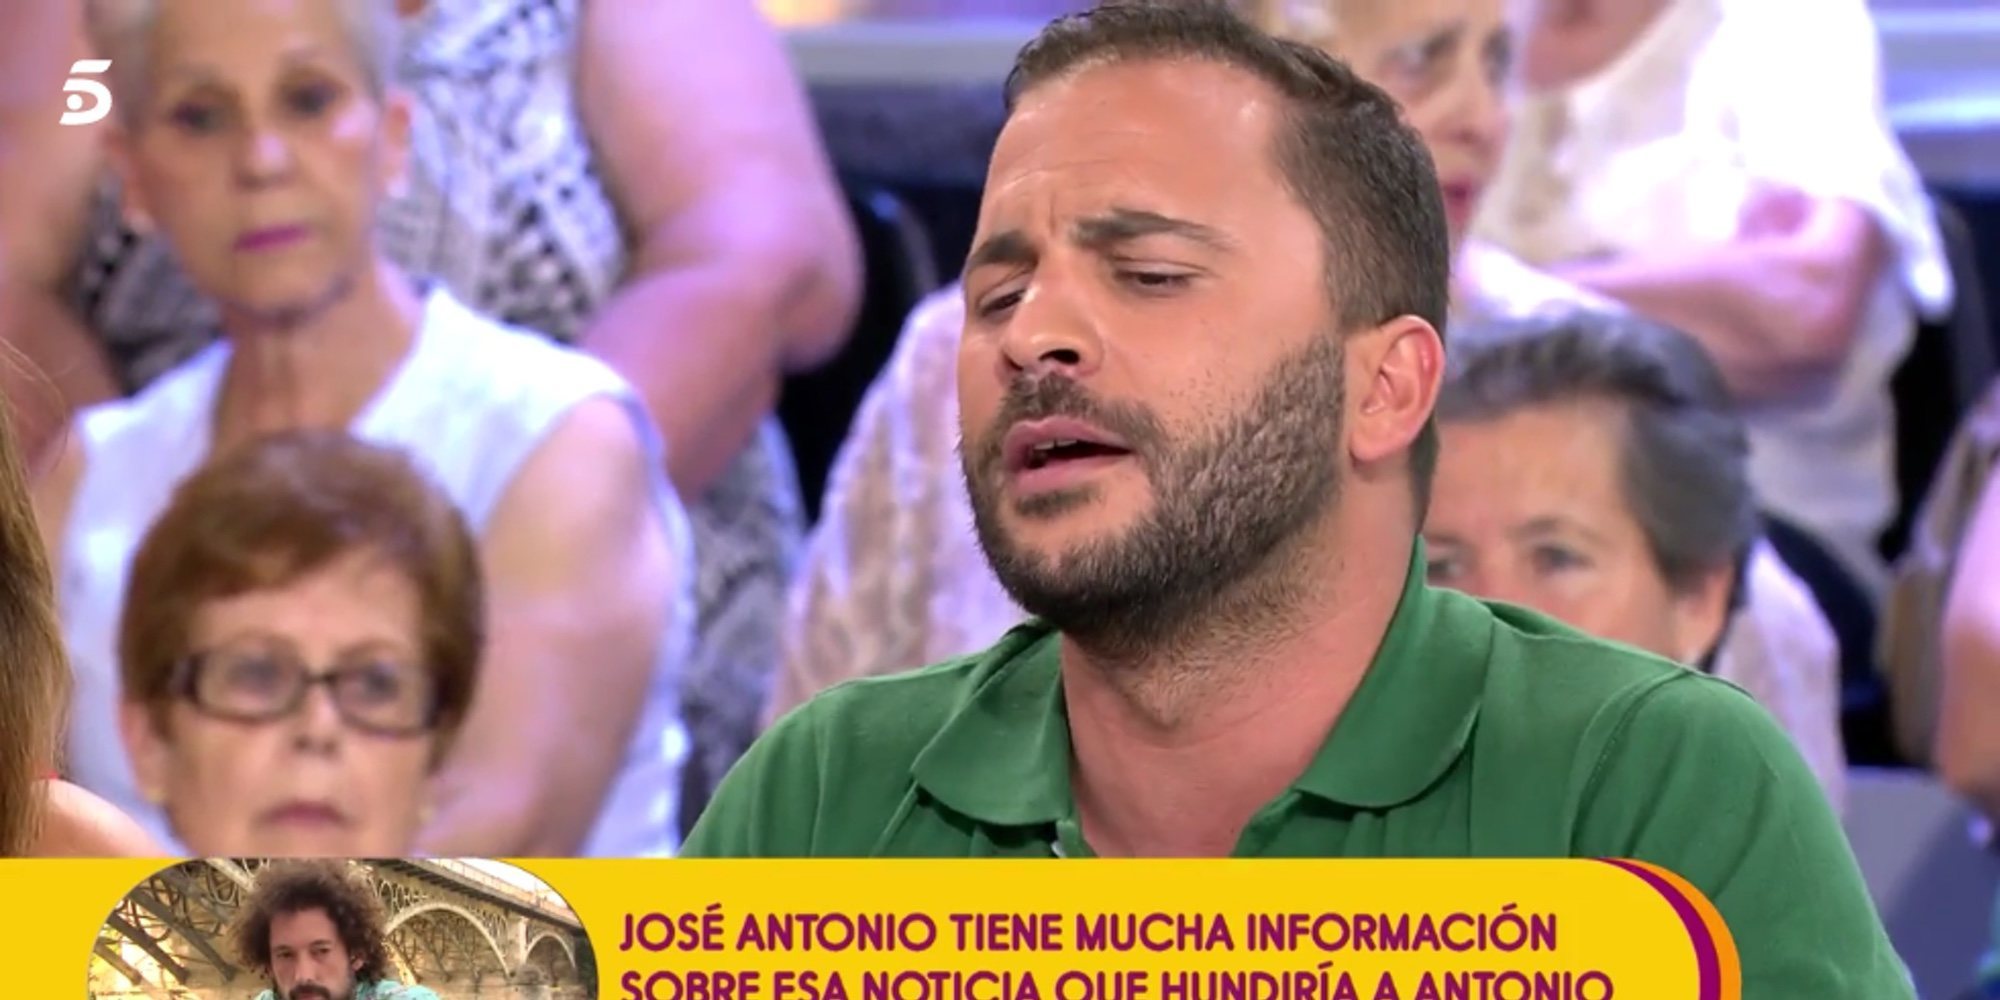 Antonio Tejado confiesa: "Hay alguien cerca de mí que quiere hacerme mucho daño"